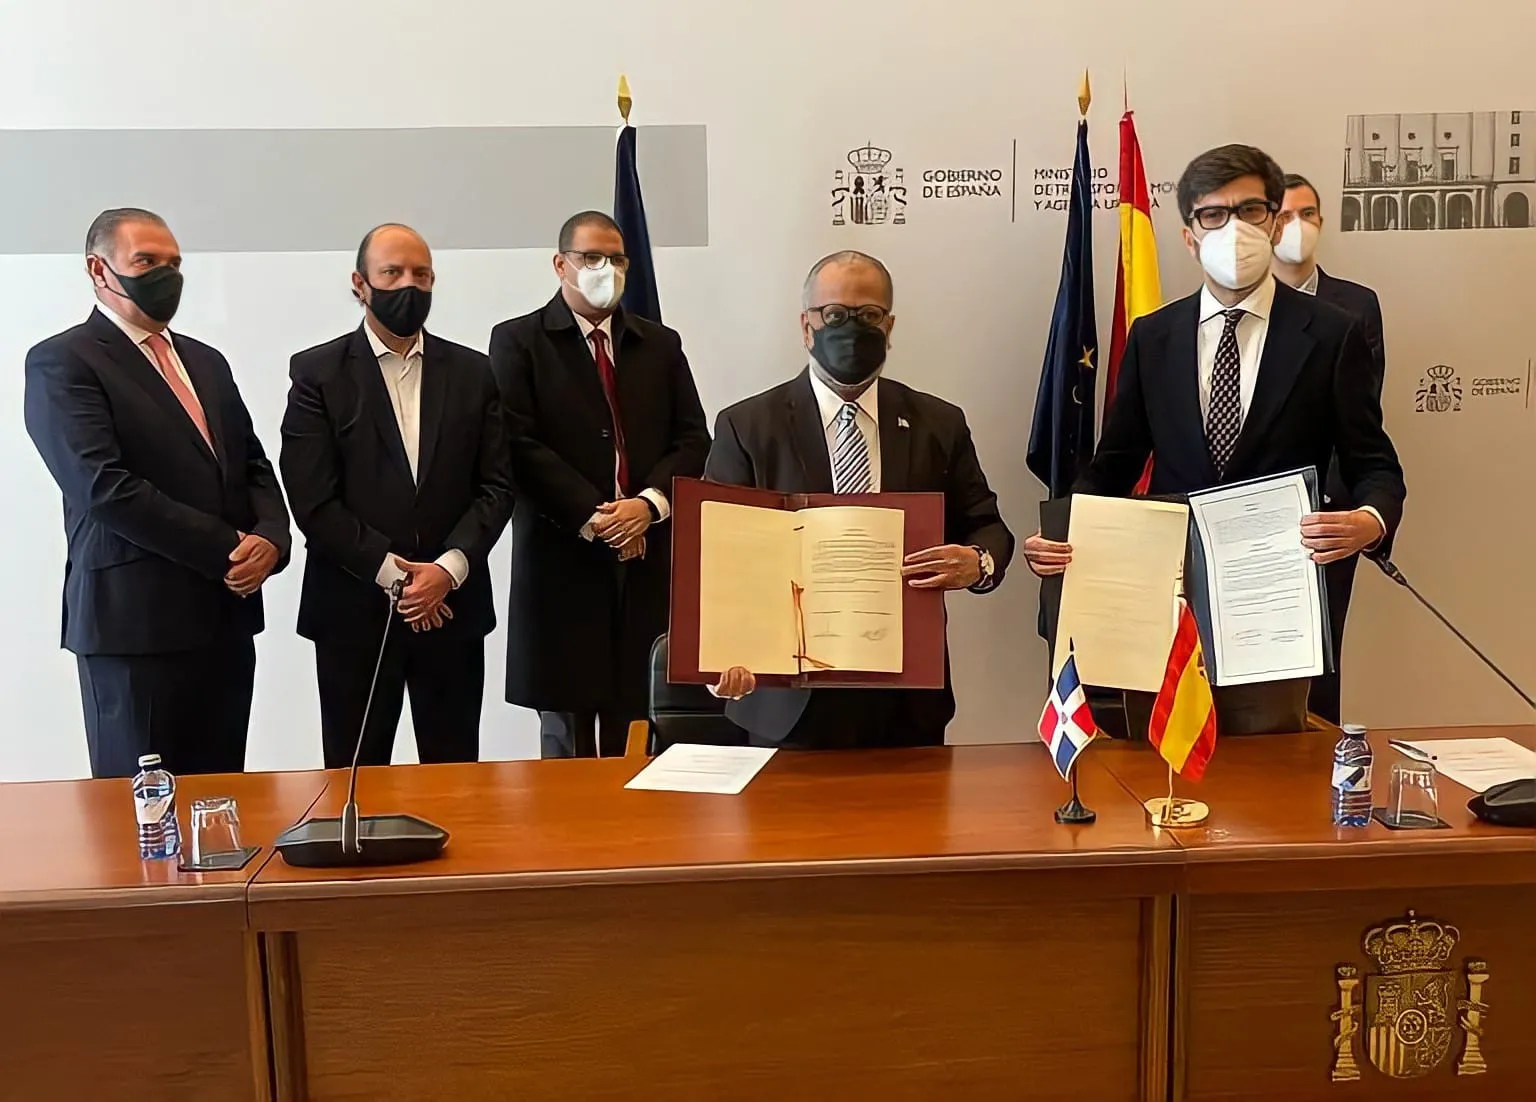 República Dominicana logra firmar acuerdo de transporte aéreo con España después de 12 años